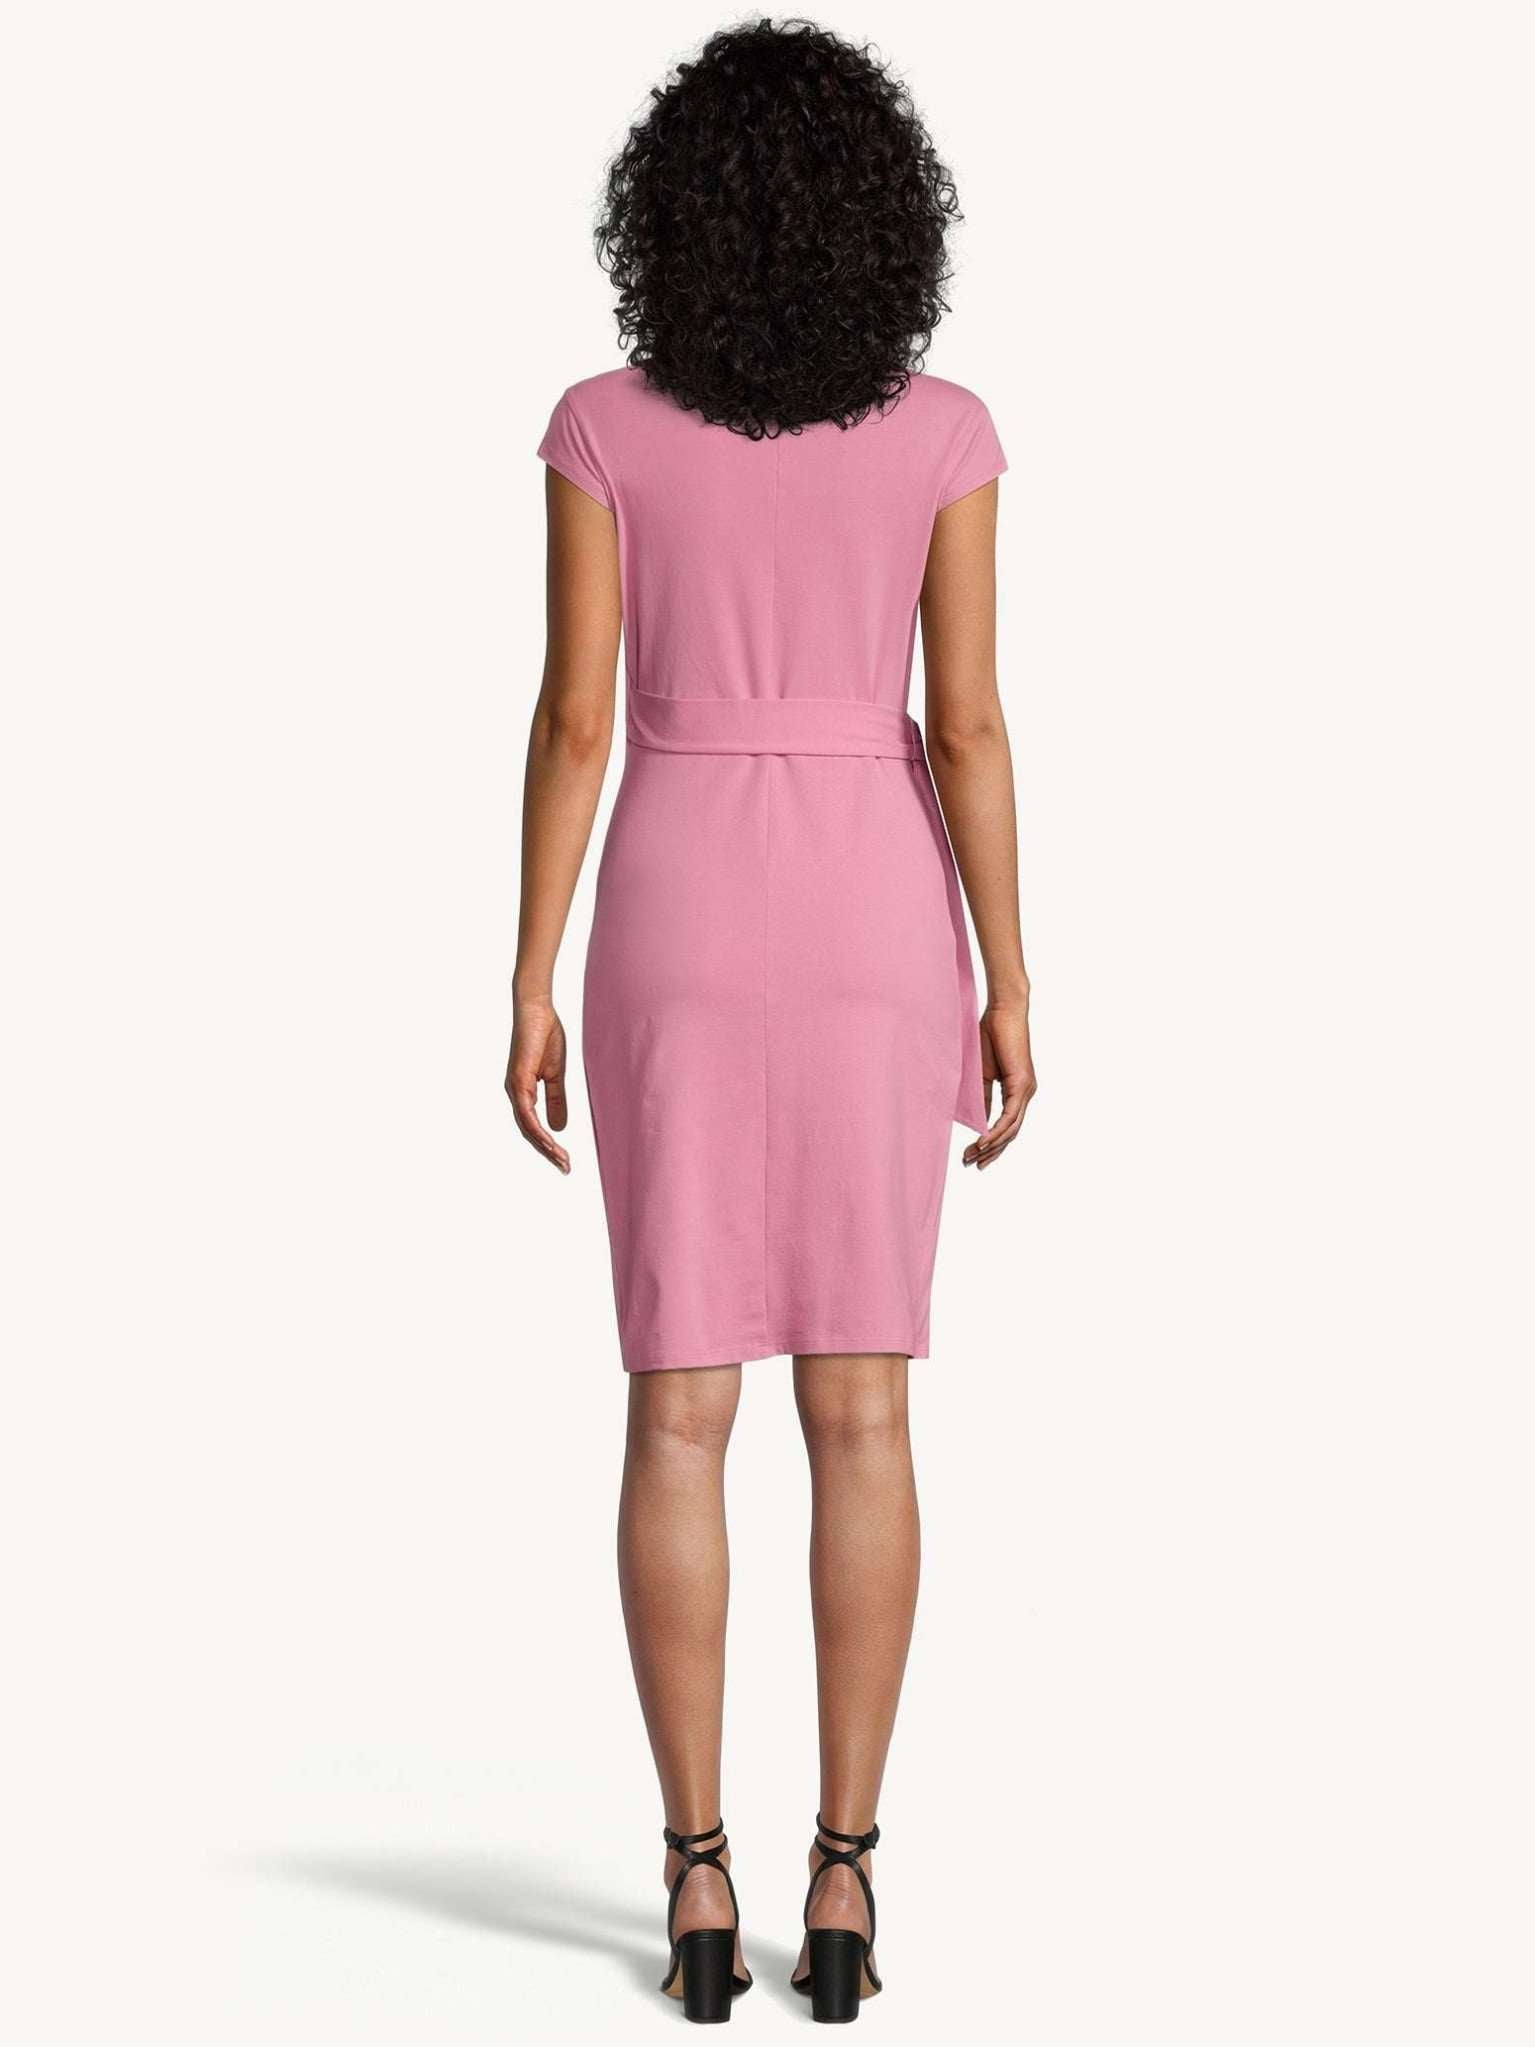 Aime Sleeveless Jersey Dress in Pink Carnation Kleider Tamaris   